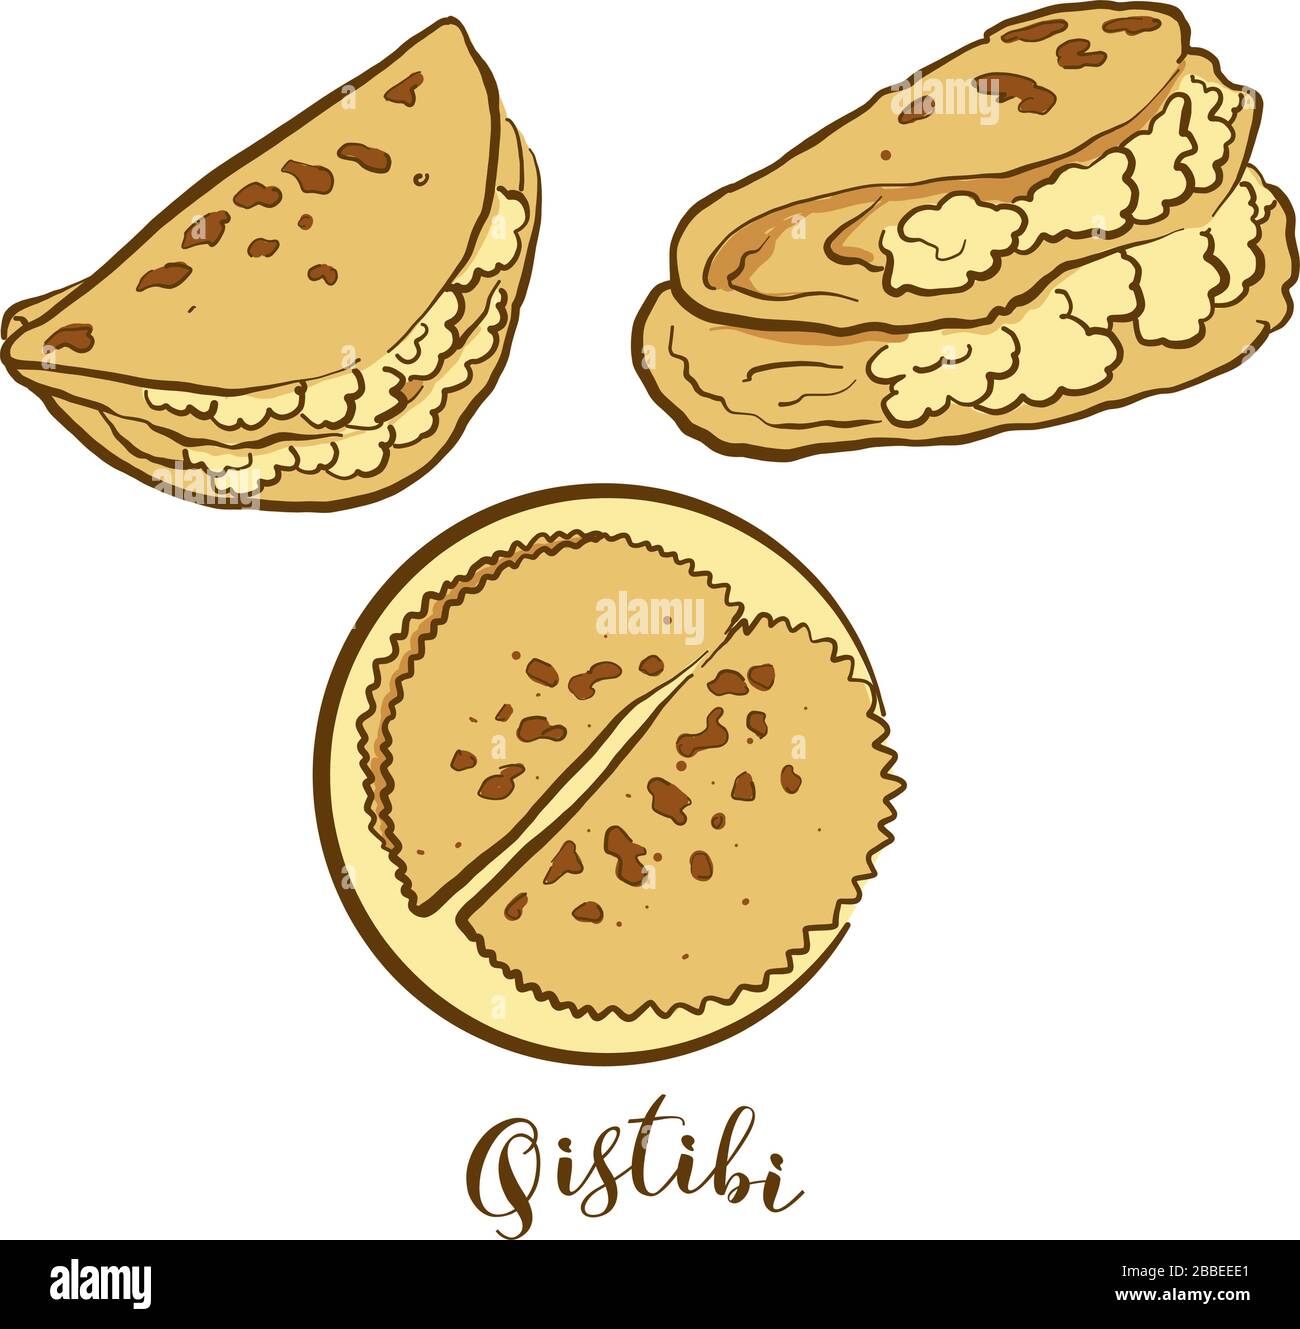 Disegno colorato del pane Qistibi. Illustrazione vettoriale di cibo di Flatbread, conosciuto solitamente in Tatarstan, Bashkortostan. Schizzi di pane colorati. Illustrazione Vettoriale